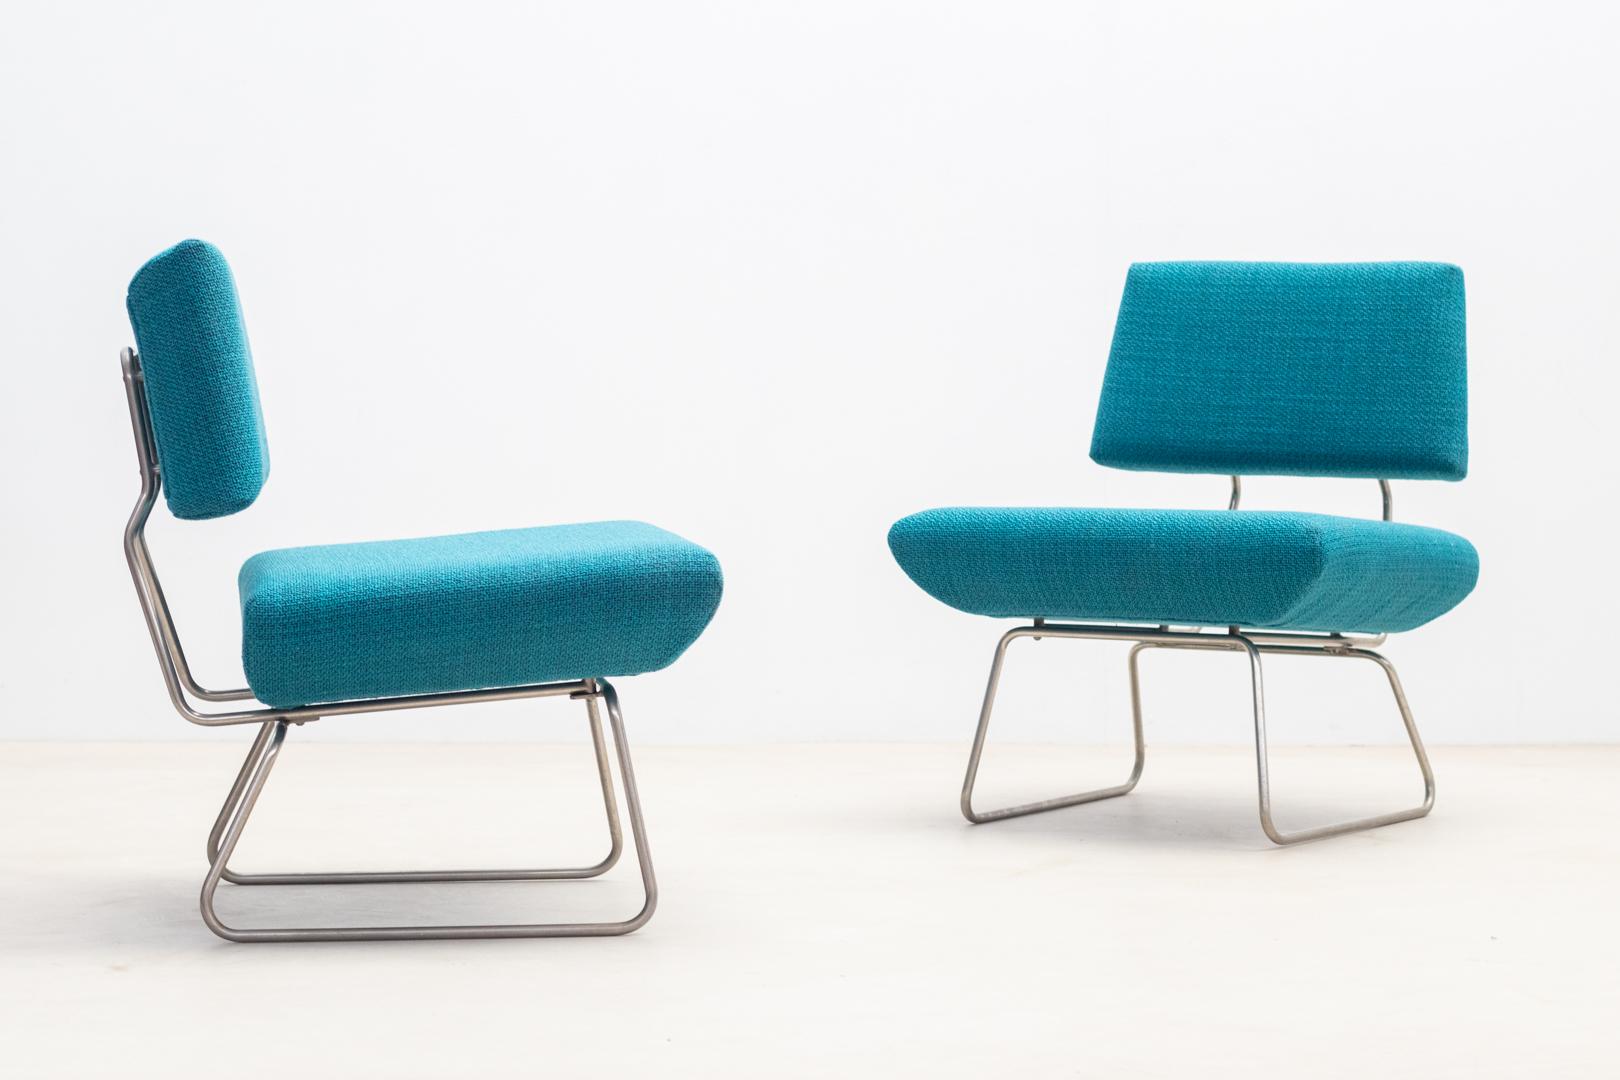 Paire de fauteuils bas aux lignes épurées  de Georges Coslin produit par Trevi Spa dans les années 1960
Ces fauteuils sont dotés d'une structure tubulaire métallique distinctive qui leur confère durabilité et soutien. 
L'assise et le dossier de ces